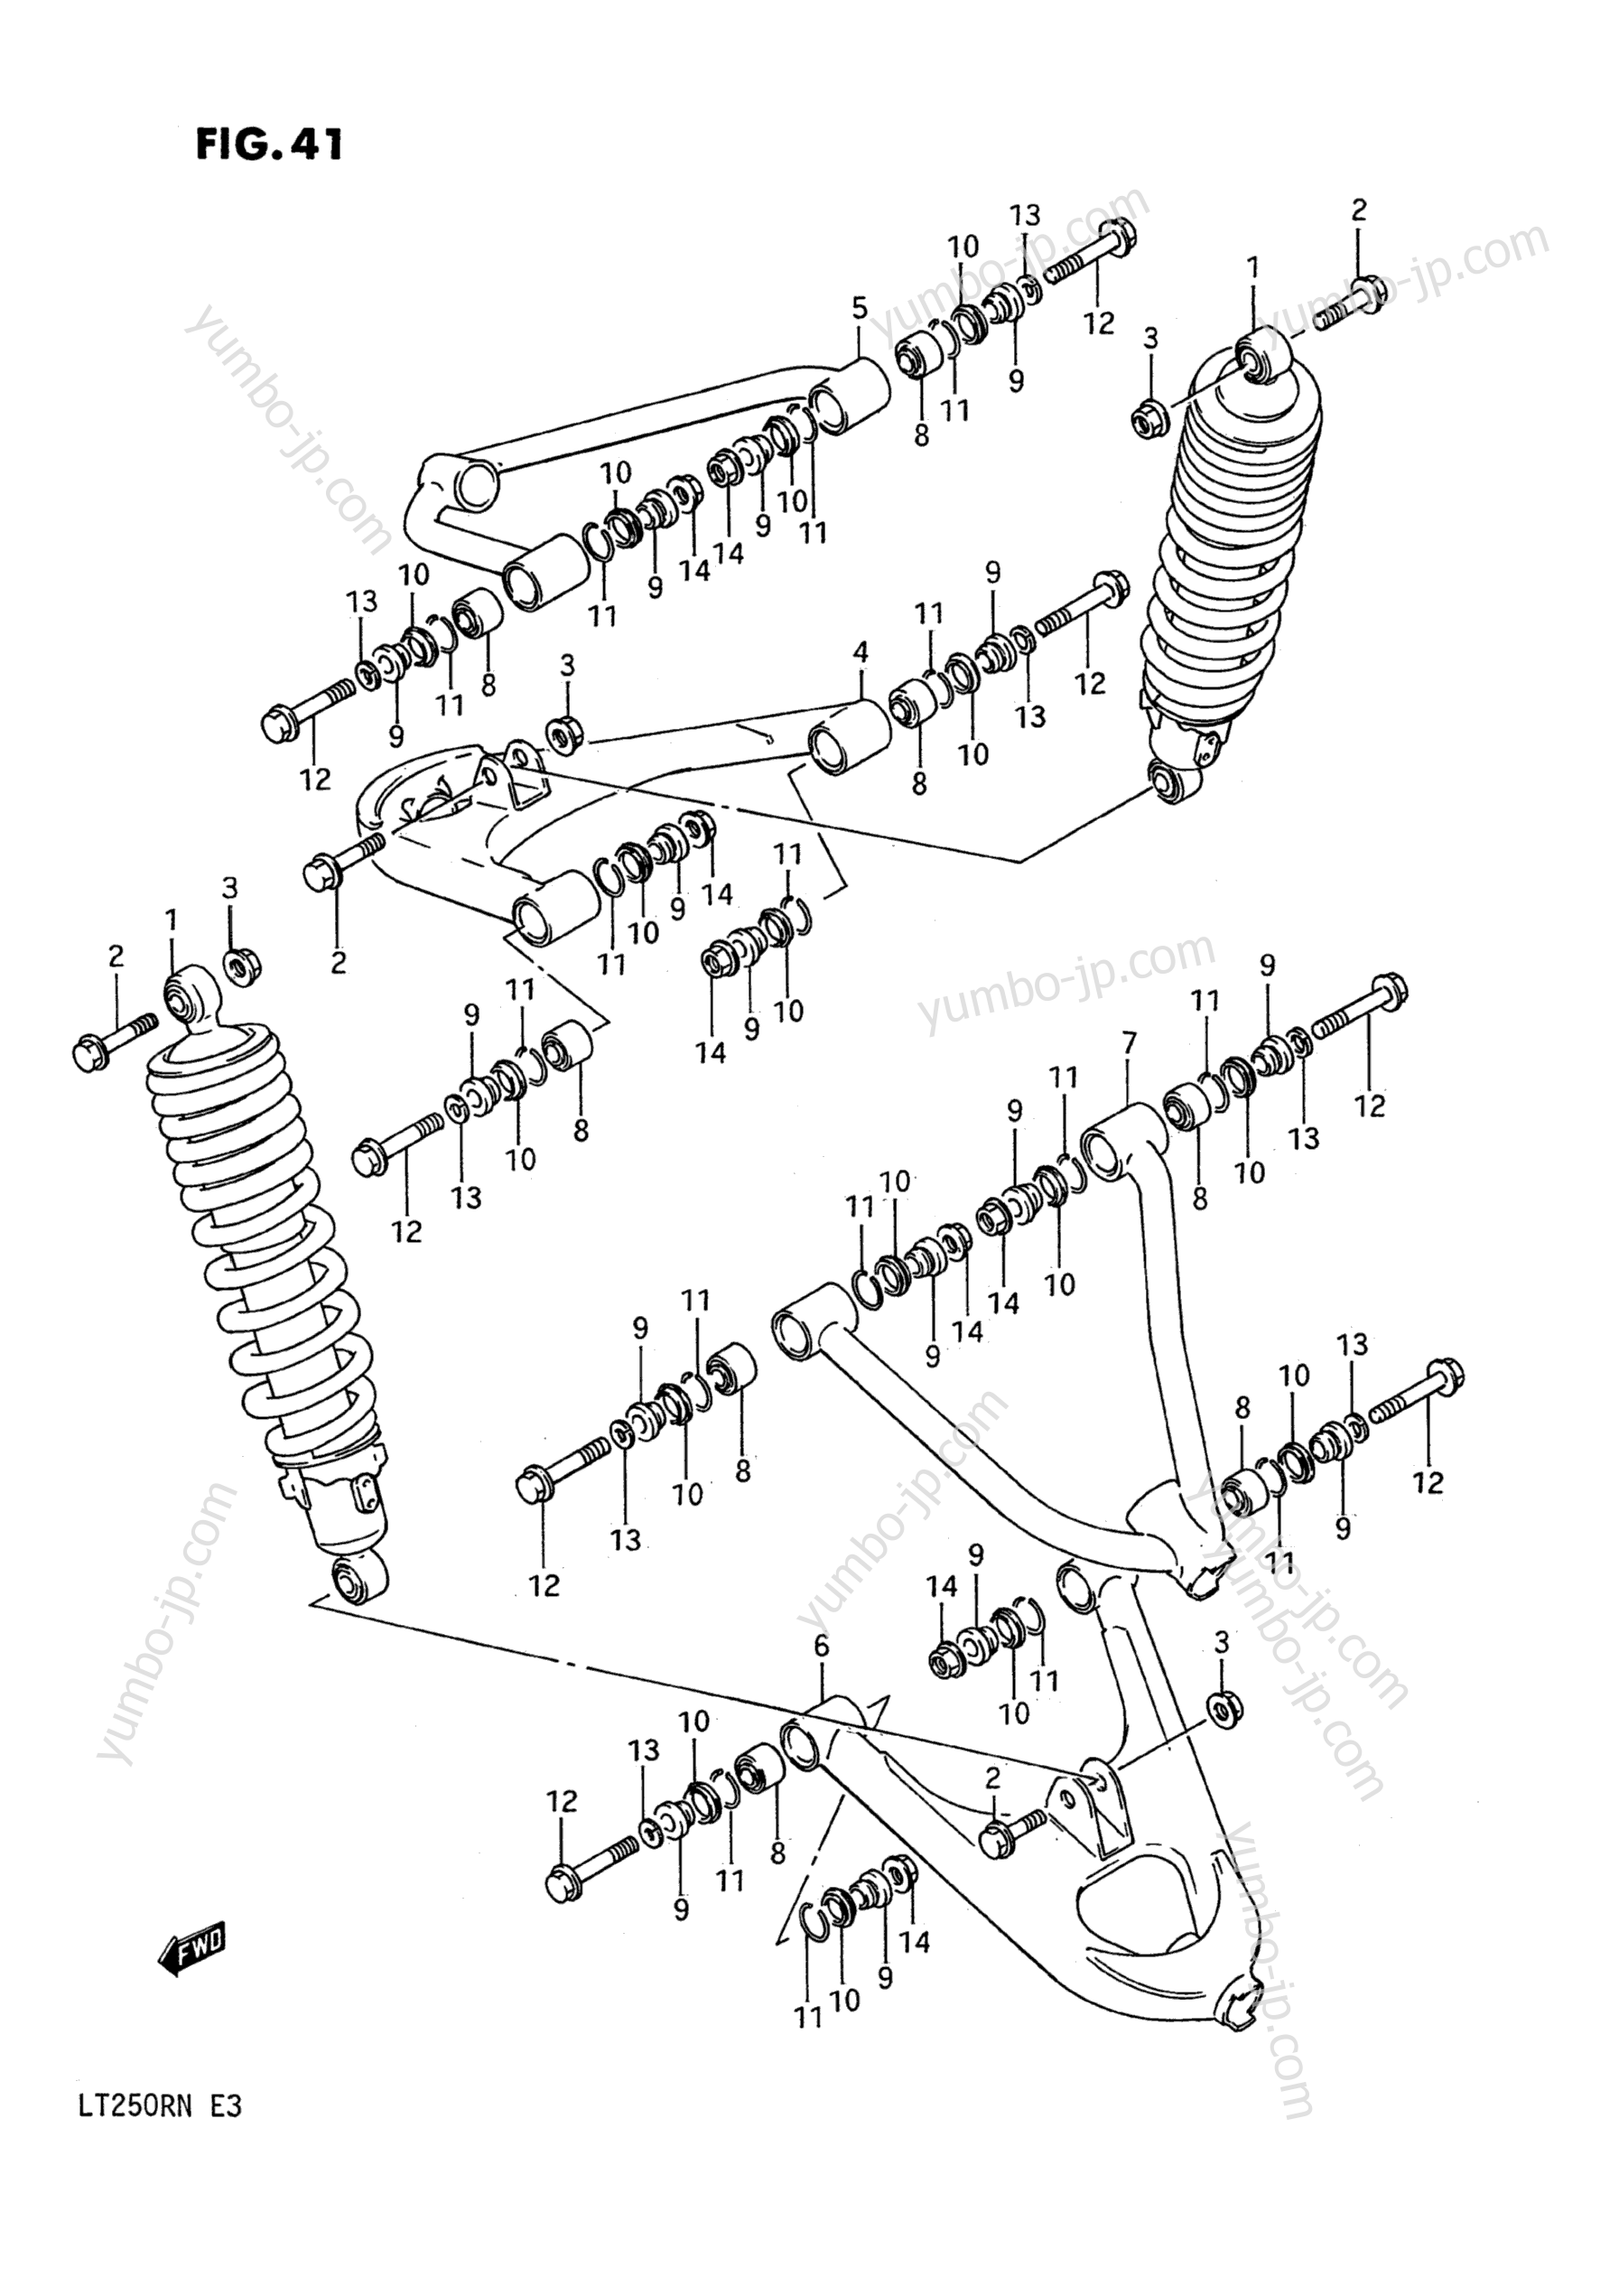 SUSPENSION ARM (MODEL F/G) for ATVs SUZUKI QuadRacer (LT250R) 1991 year